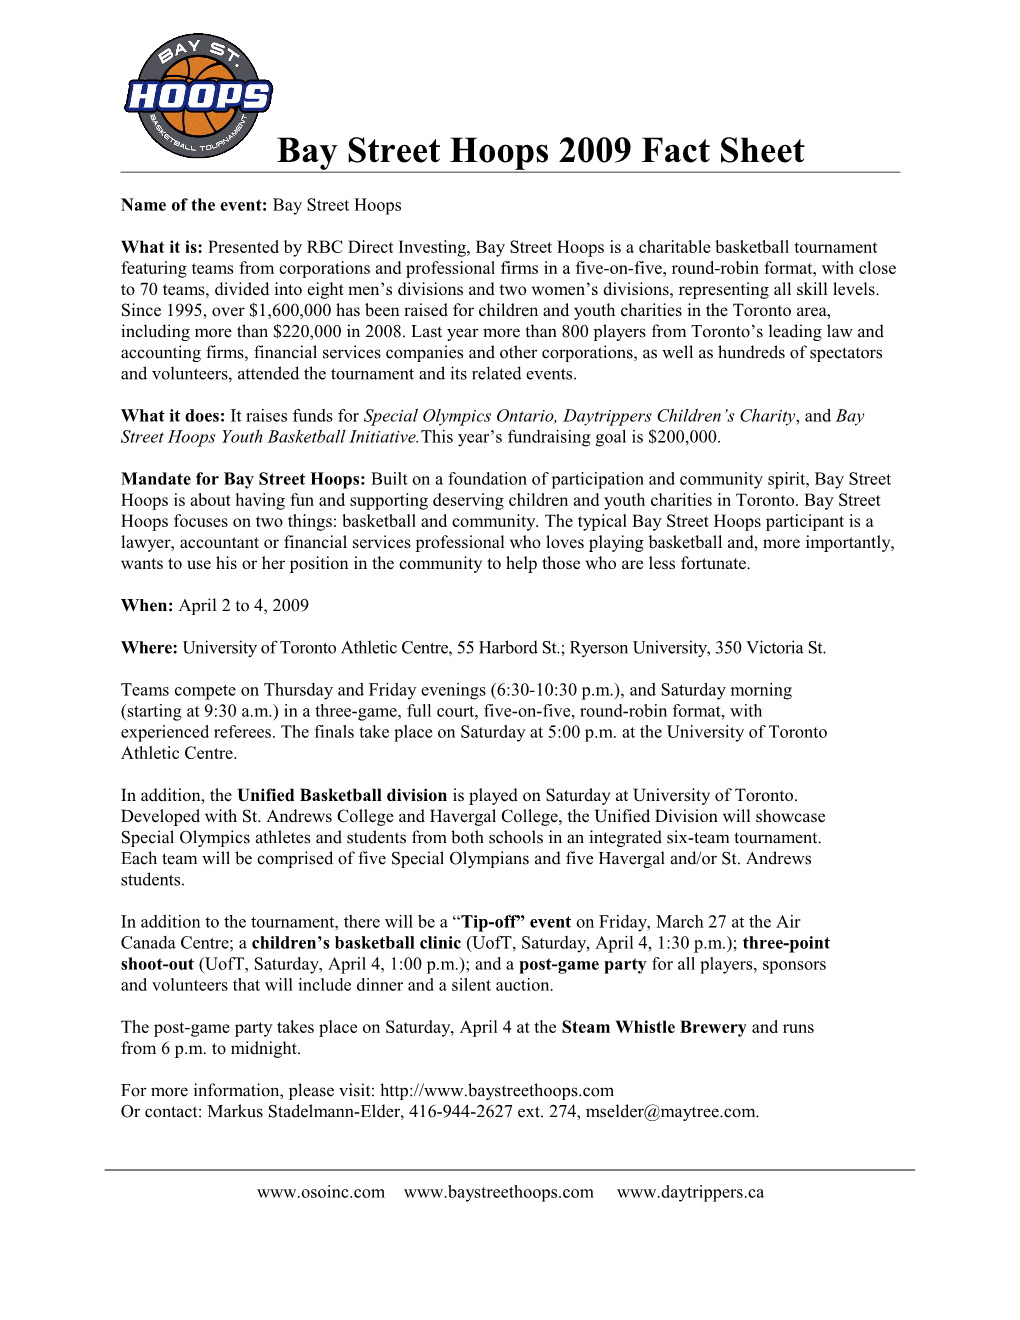 Bay Street Hoops 2007 Fact Sheet